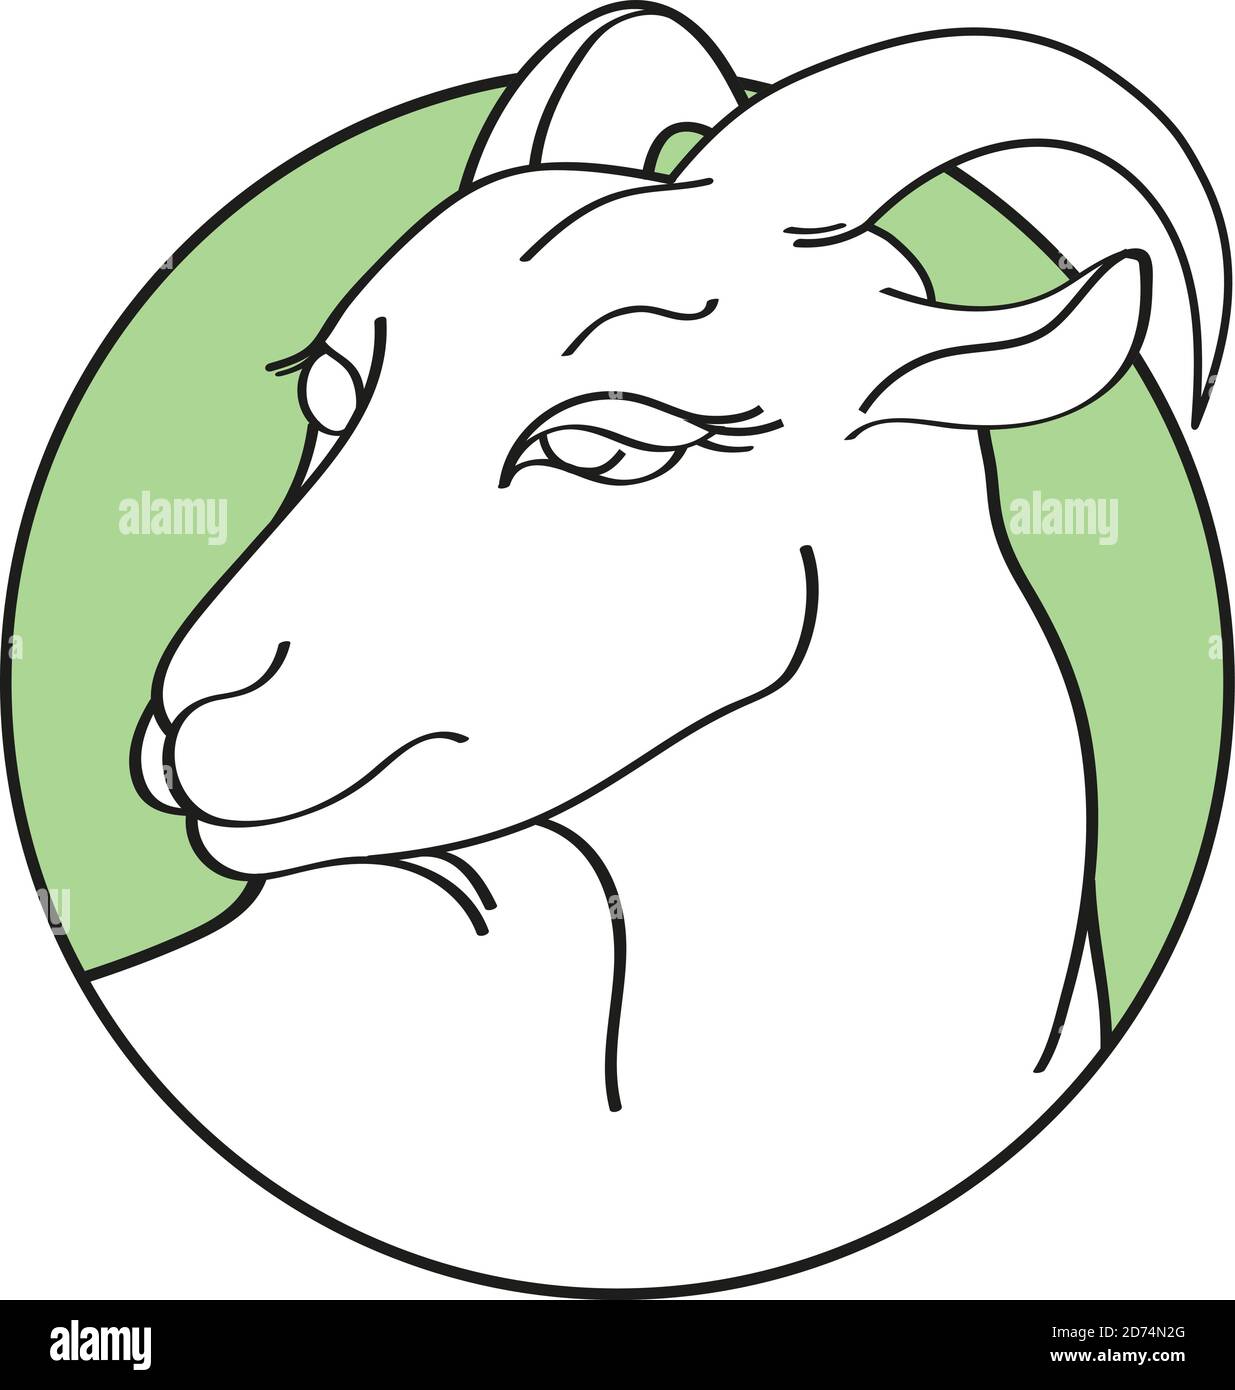 Chèvre dessiné à la main dans un cadre vert rond isolé sur fond blanc. Silhouette linéaire. Illustration vectorielle. Emblème de fromage de fermier biologique, lait ou viande Illustration de Vecteur